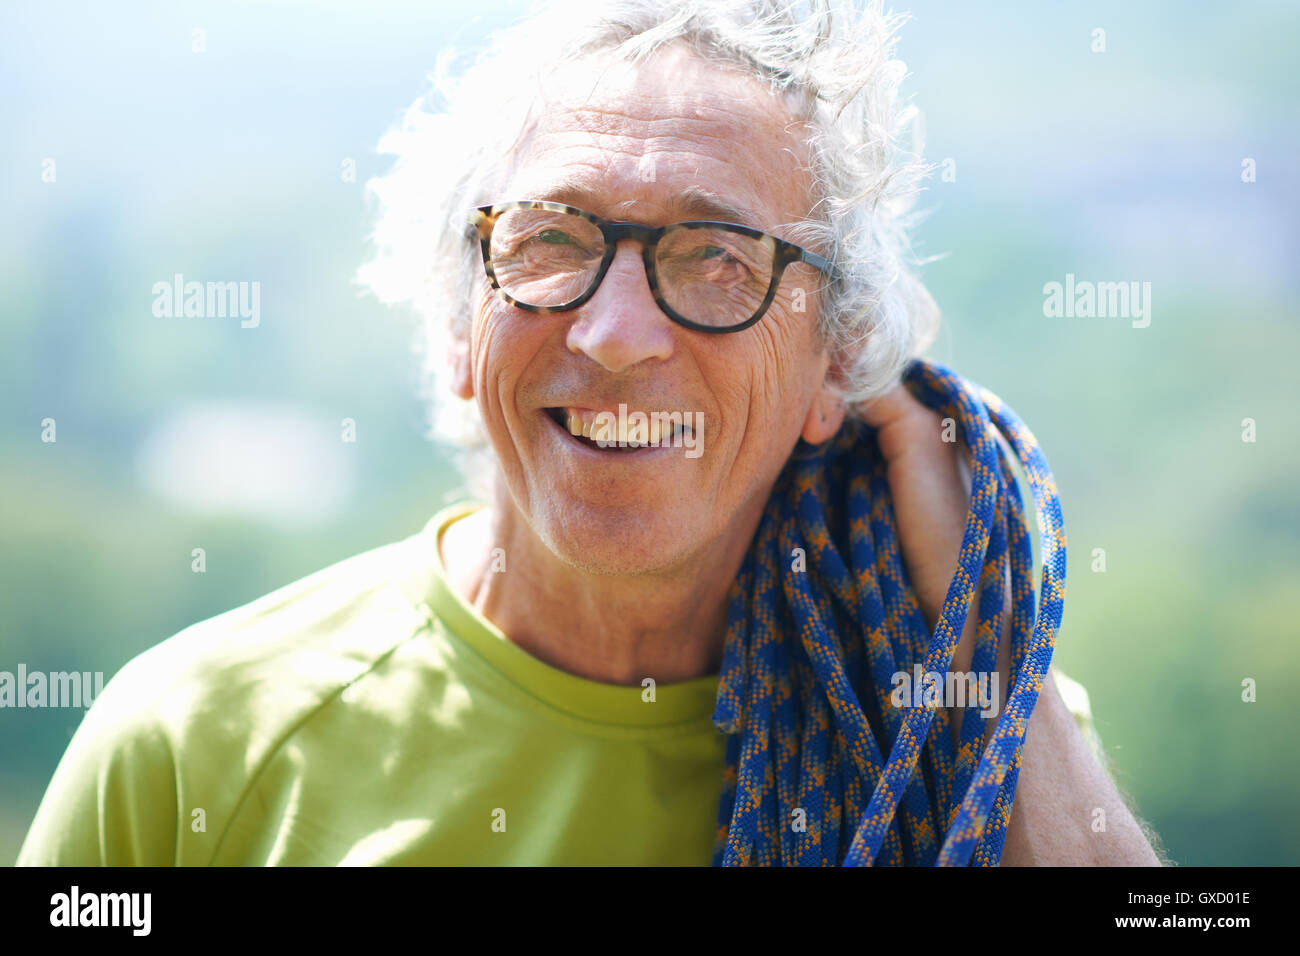 Portrait de rock climber looking at camera smiling Banque D'Images